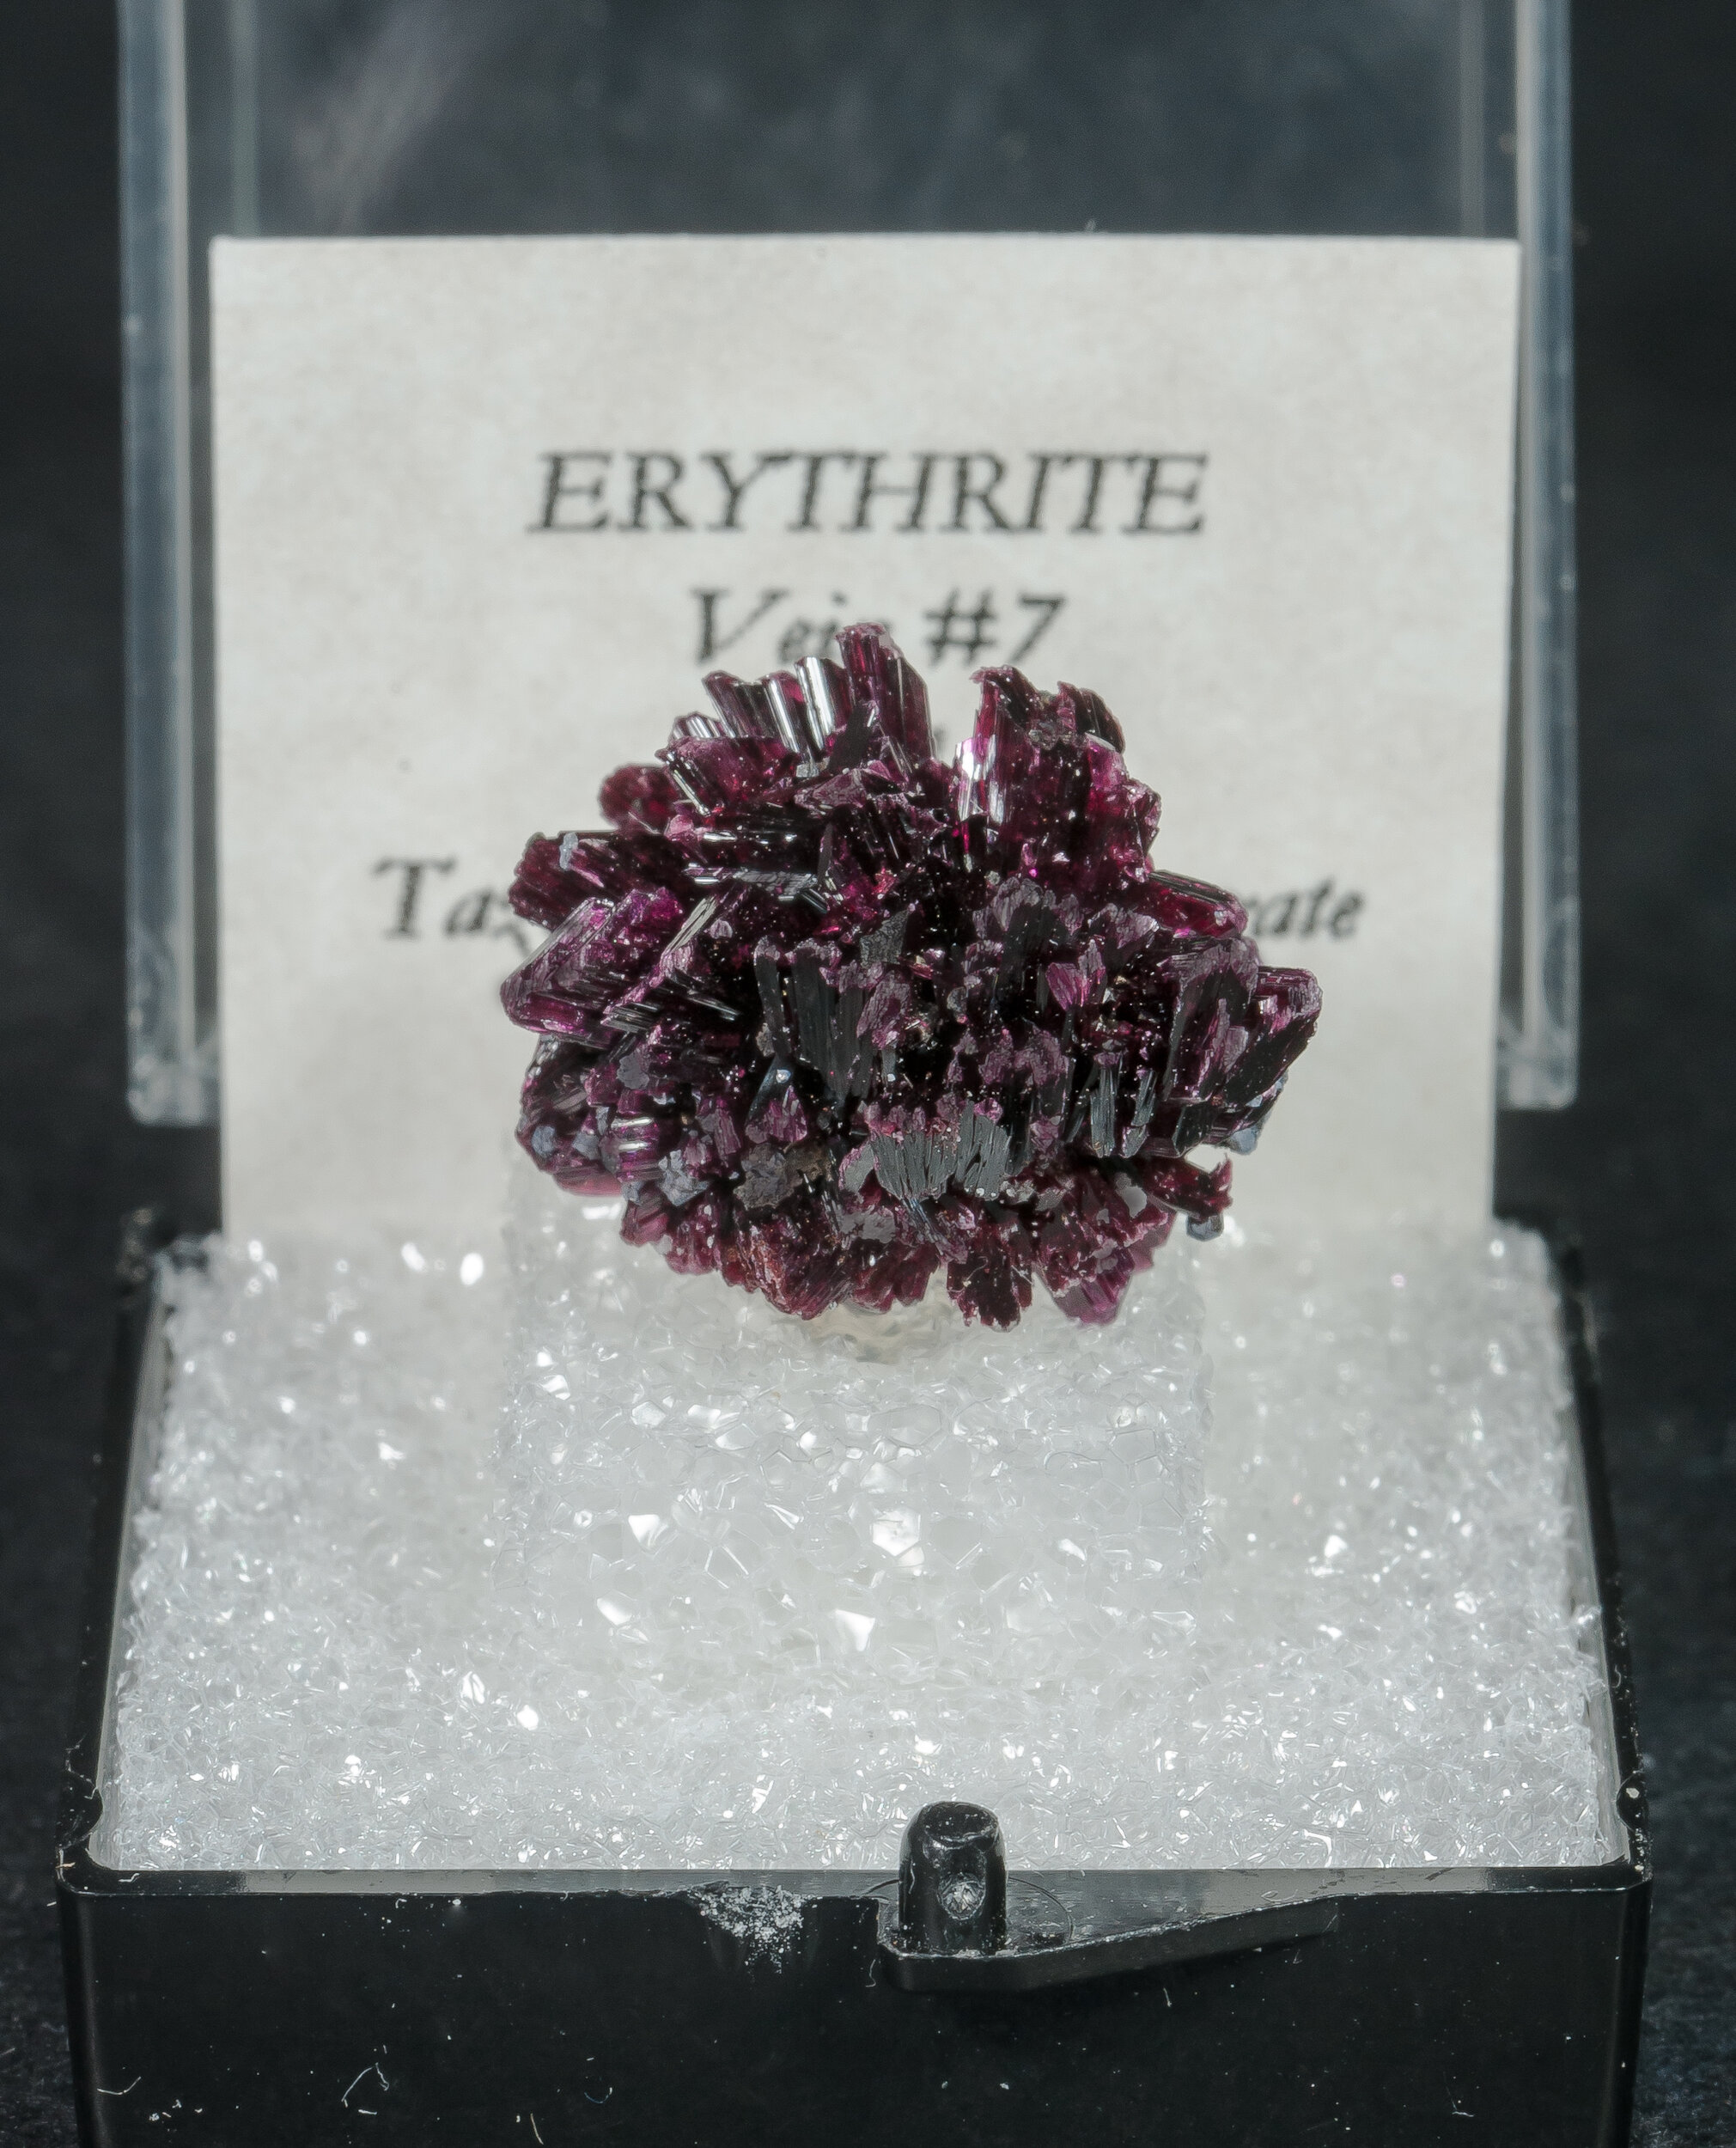 specimens/s_imagesAO3/Erythrite-TAR16AO3f1.jpg